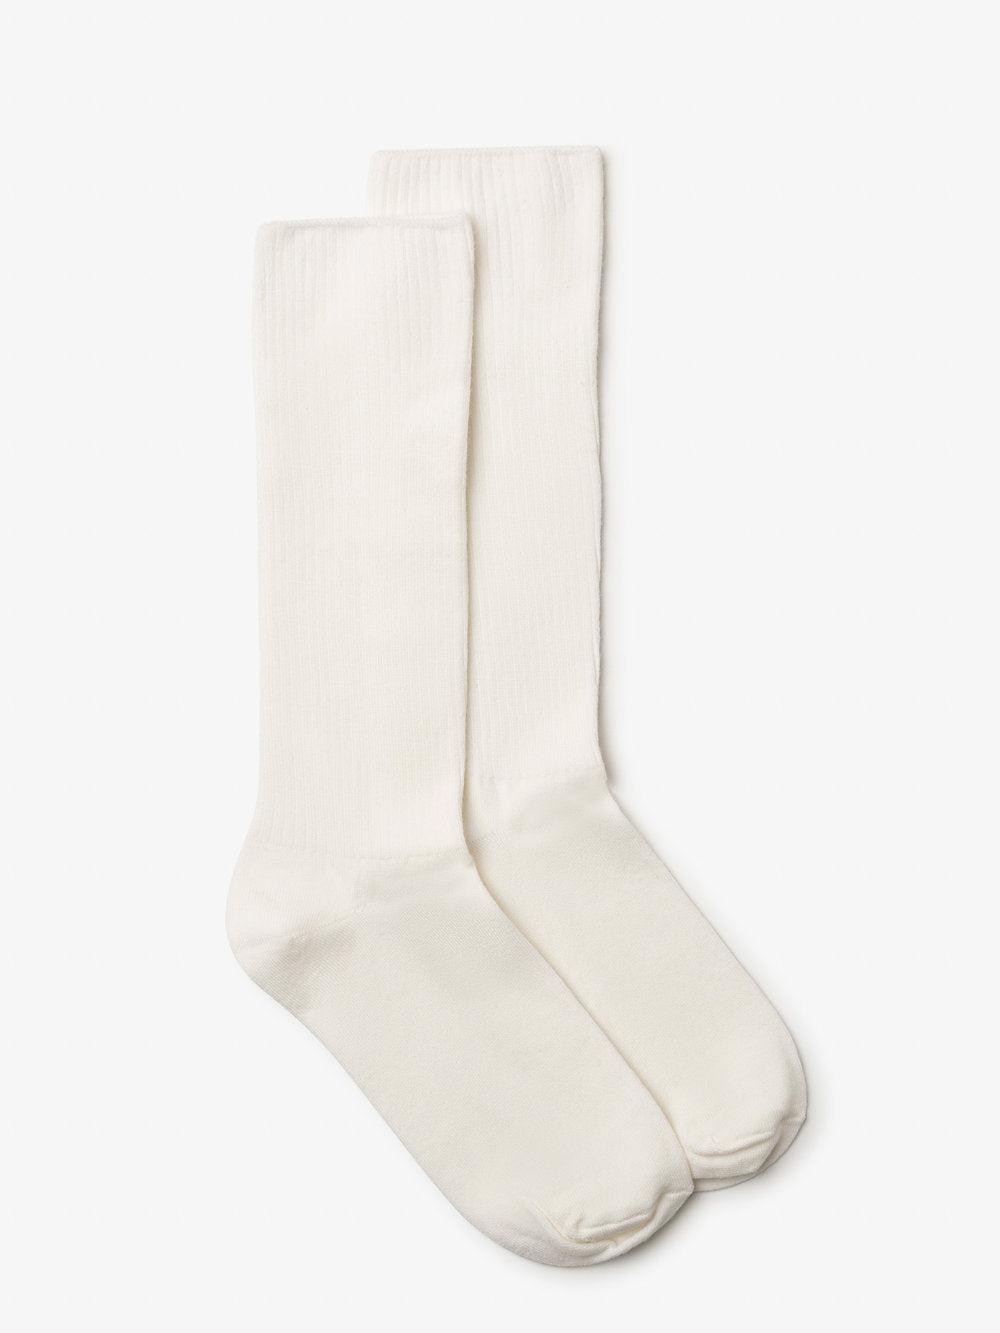 Milo & Dexter Merino Socks in White Fall 23/24